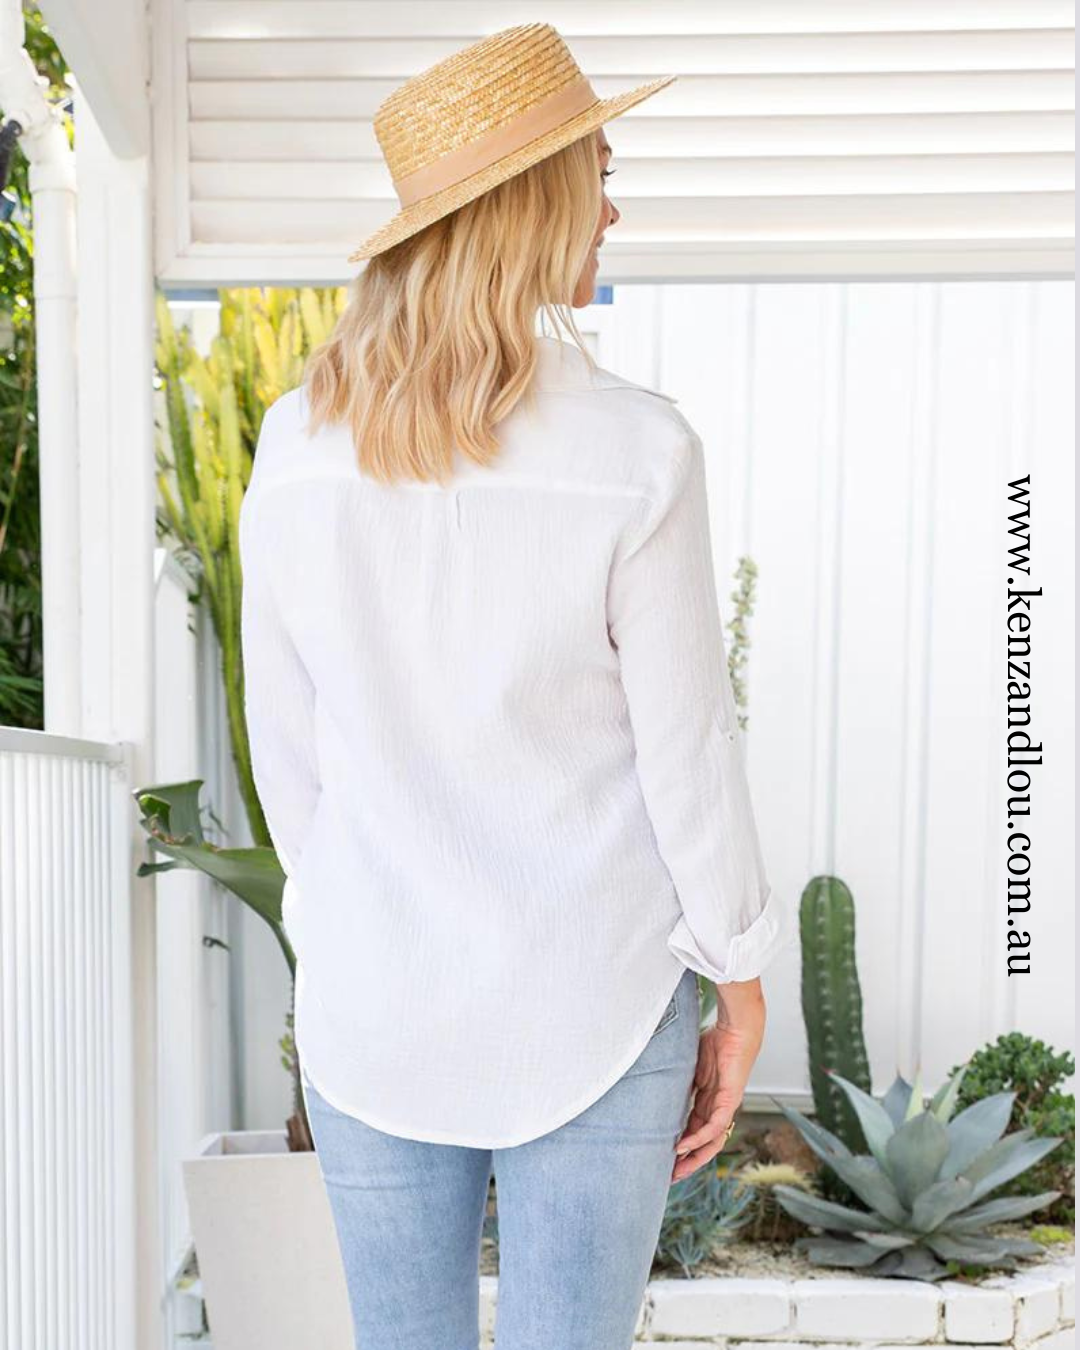 Freez white 100% cotton shirt kenz&lou size 8-22 back view